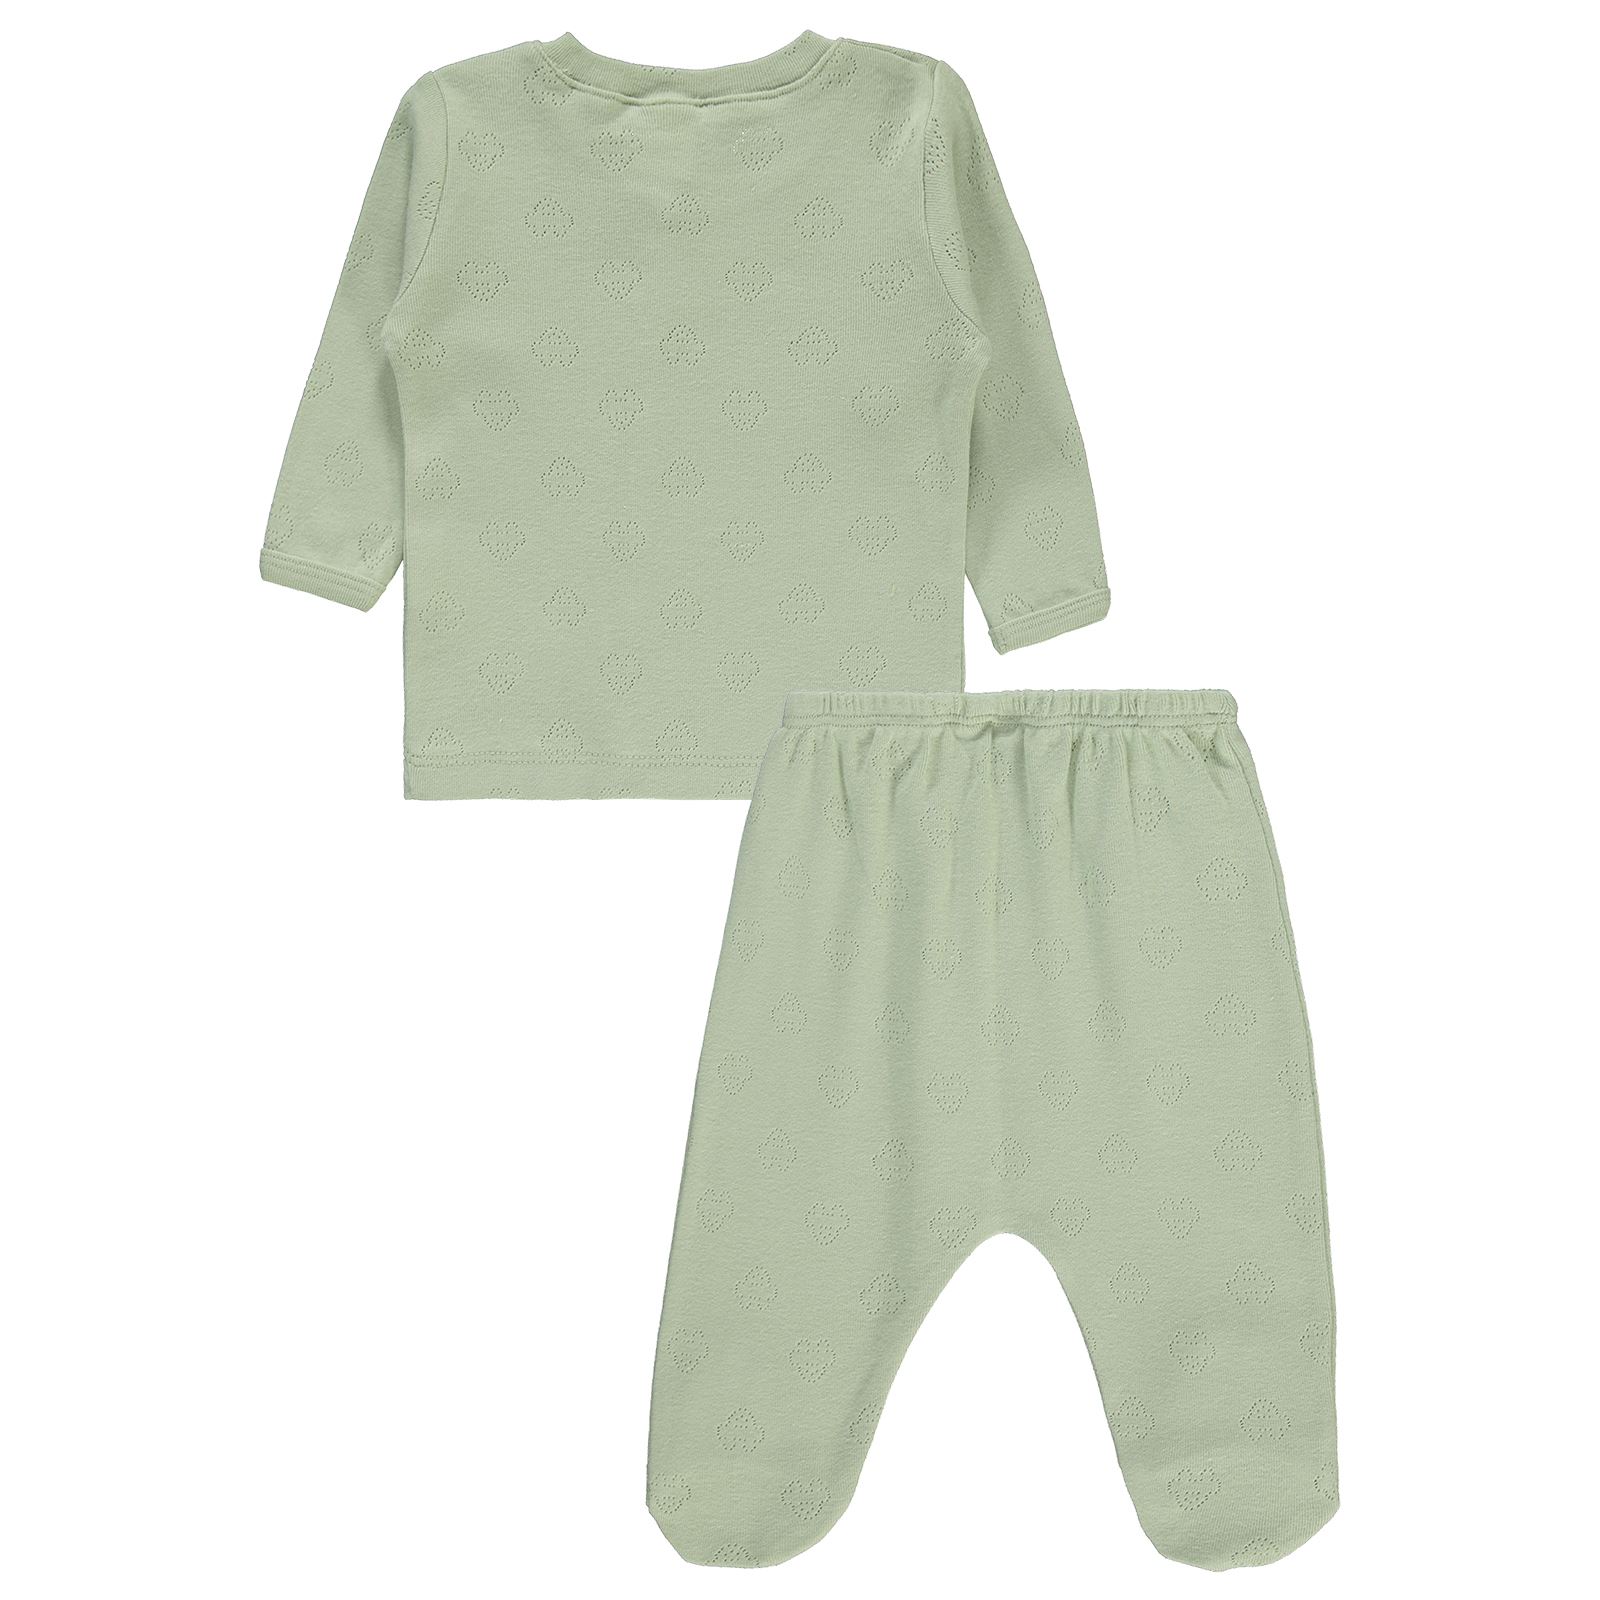 Civil Baby Erkek Bebek Pijama Takımı 1-9 Ay  Çağla Yeşili